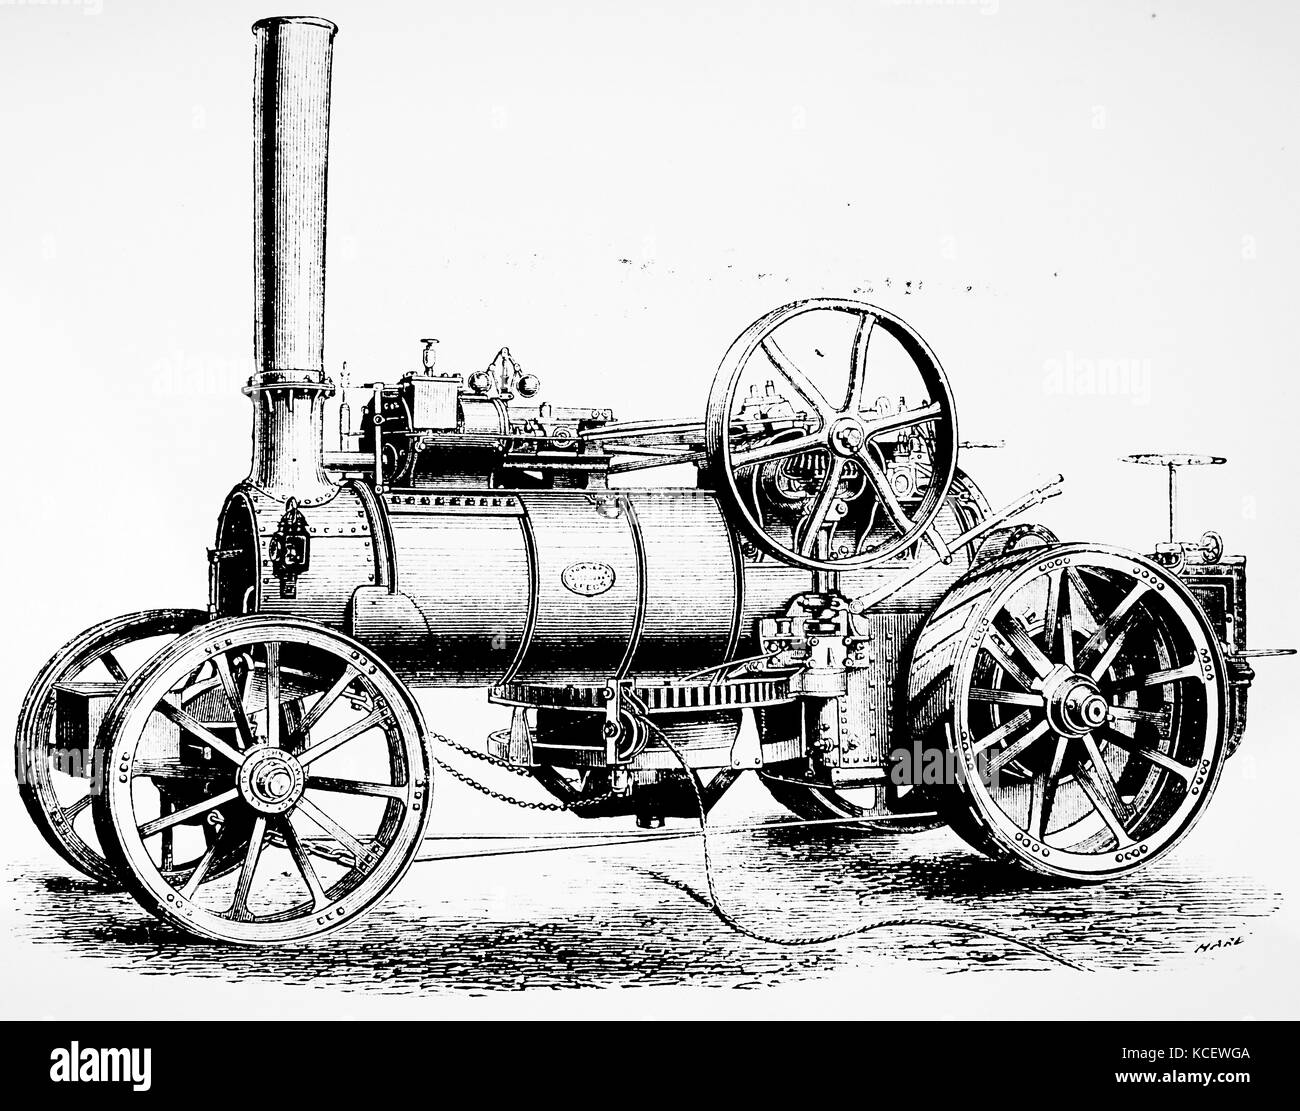 Kupferstich mit der Darstellung eines 12 PS, 1 Zylinder, pflügen Dampfmaschine, mit Trommel Kabel für Ziehen unter dem Kessel ausgerüstet Pflug zu fahren. Vom 19. Jahrhundert Stockfoto